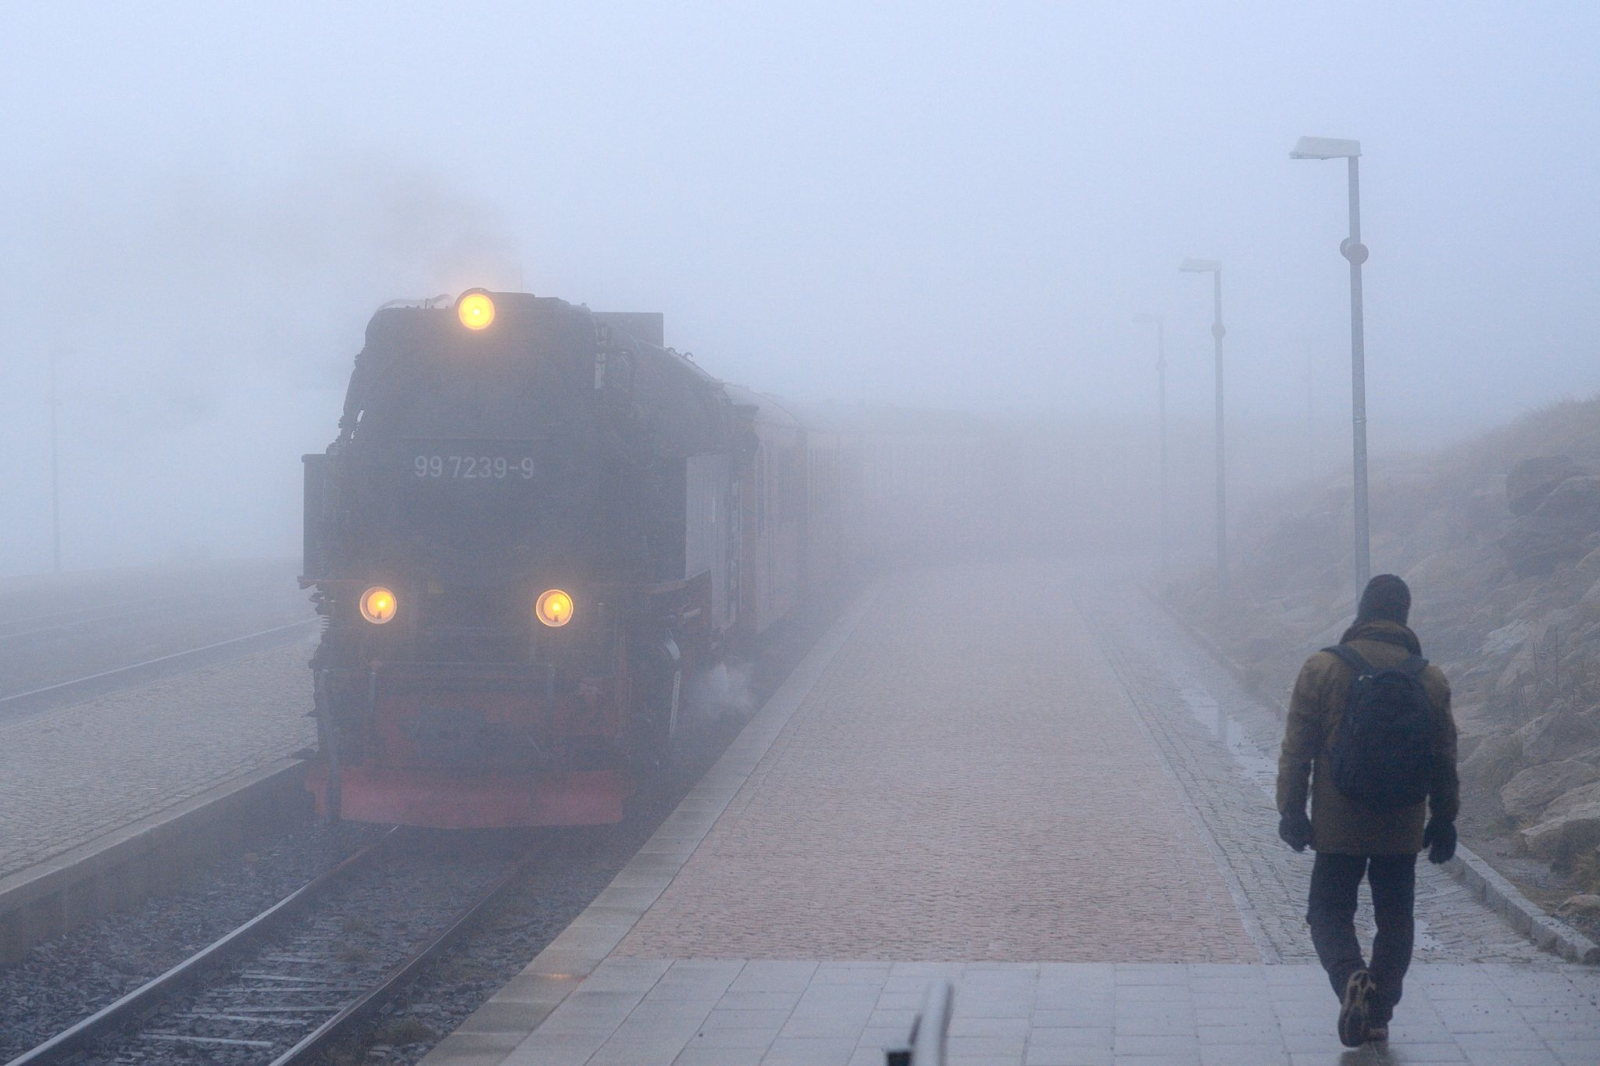 Die Brockenbahn der Harzer Schmalspurbahnen (HSB) fährt bei dichtem Nebel in einen Bahnhof ein.